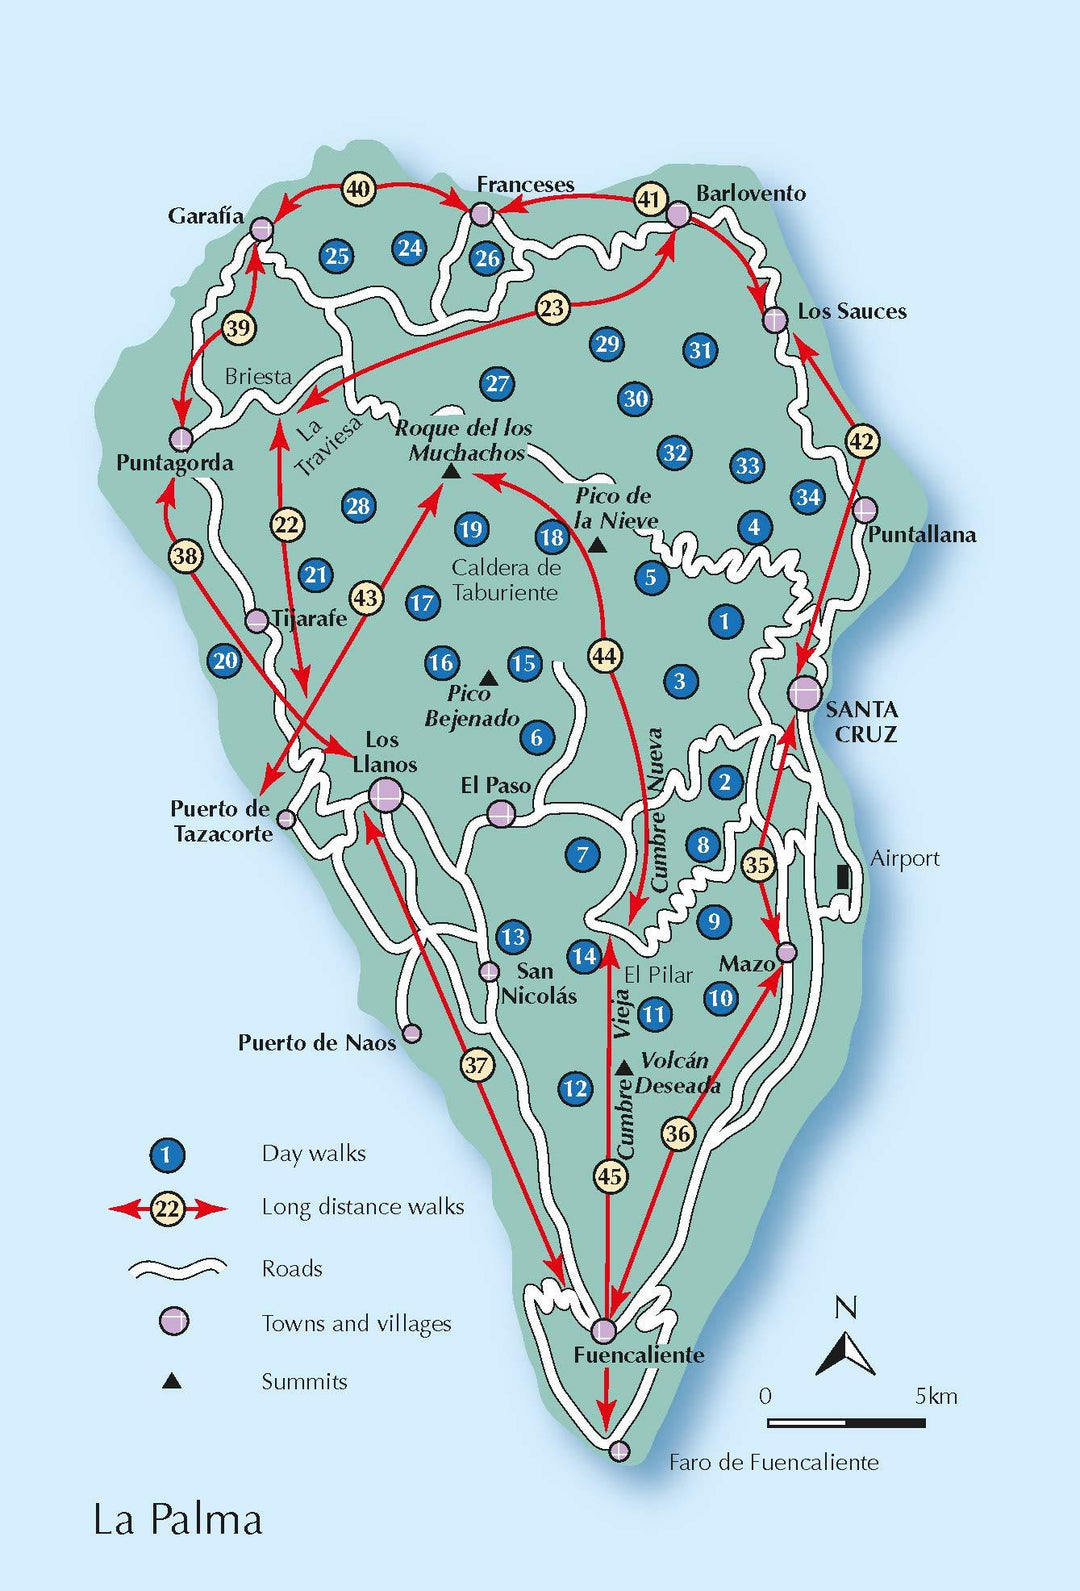 Guide de randonnées (en anglais) - La Palma : 45 day walks & long distance.trails | Cicerone guide de randonnée Cicerone 